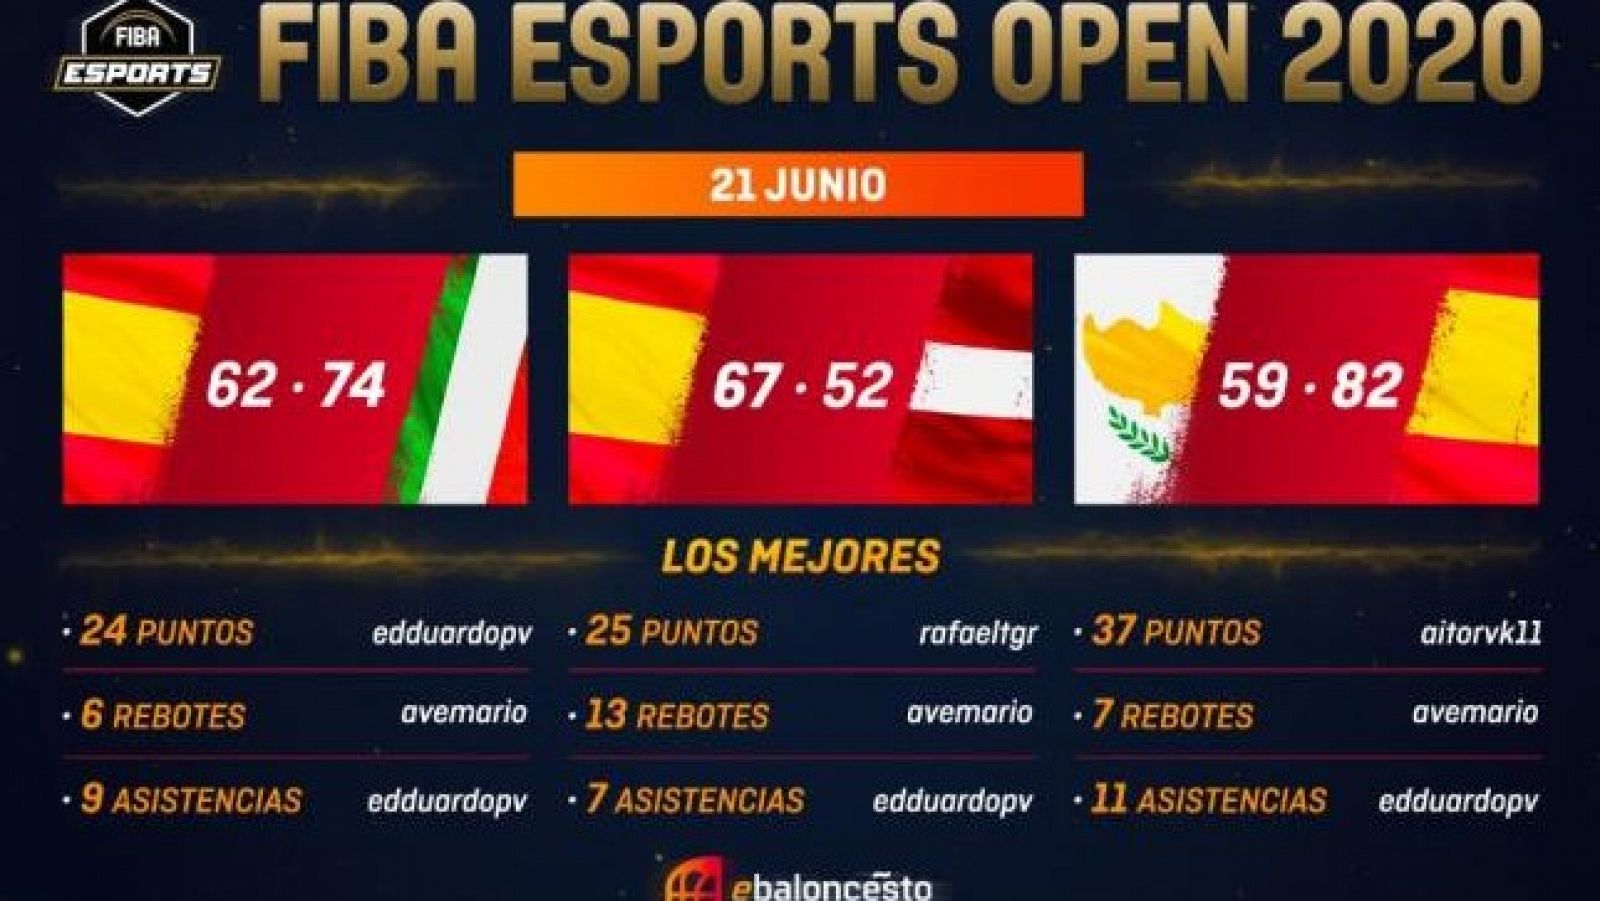 Imagen del torneo de exhibición FIBA eSports Open 2020